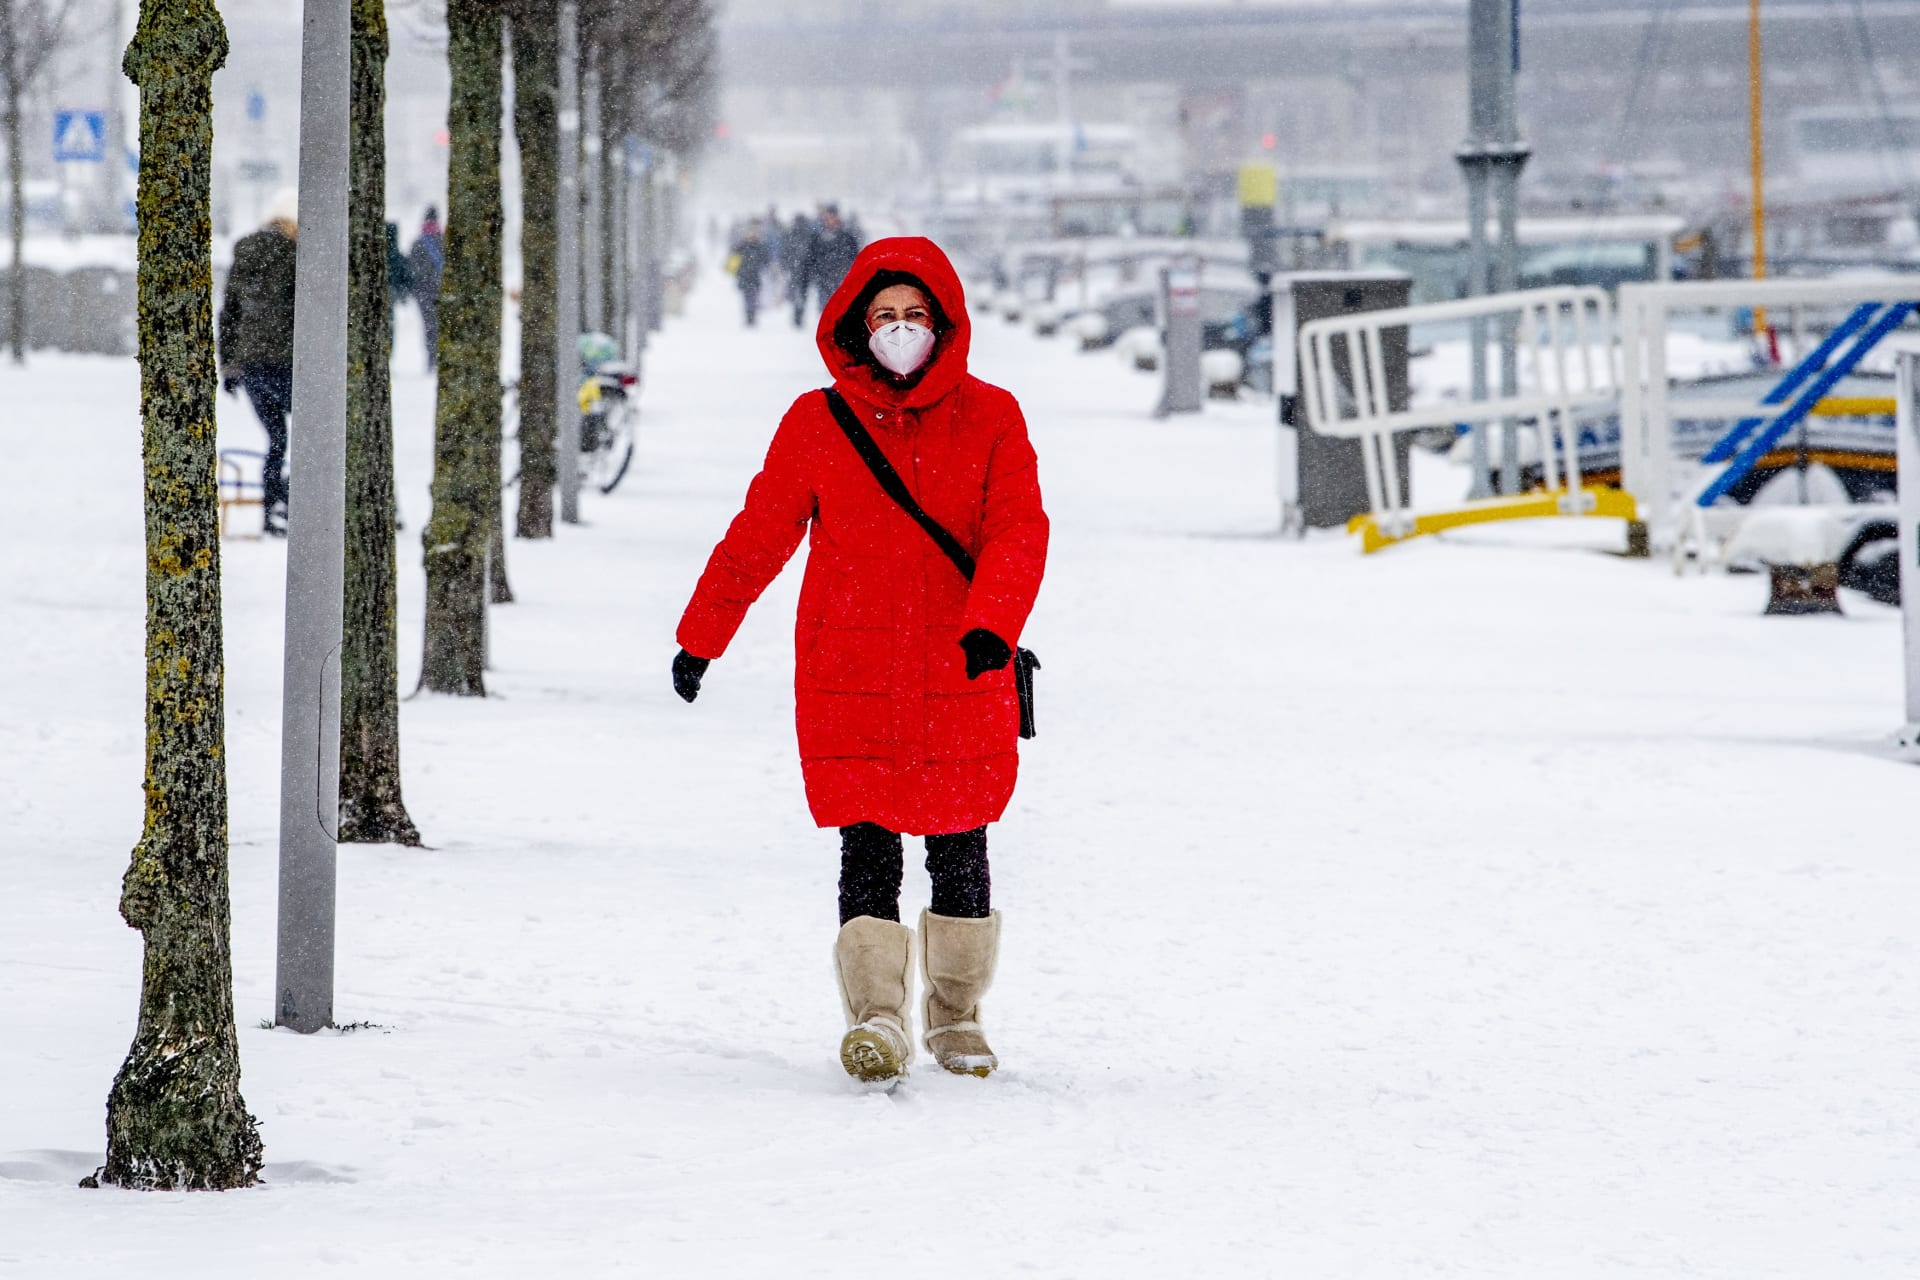 Mrazivé počasí bude Českou republiku sužovat i v následujícím týdnu. Poté se bude pomalu oteplovat. (Zdroj: Profimedia)